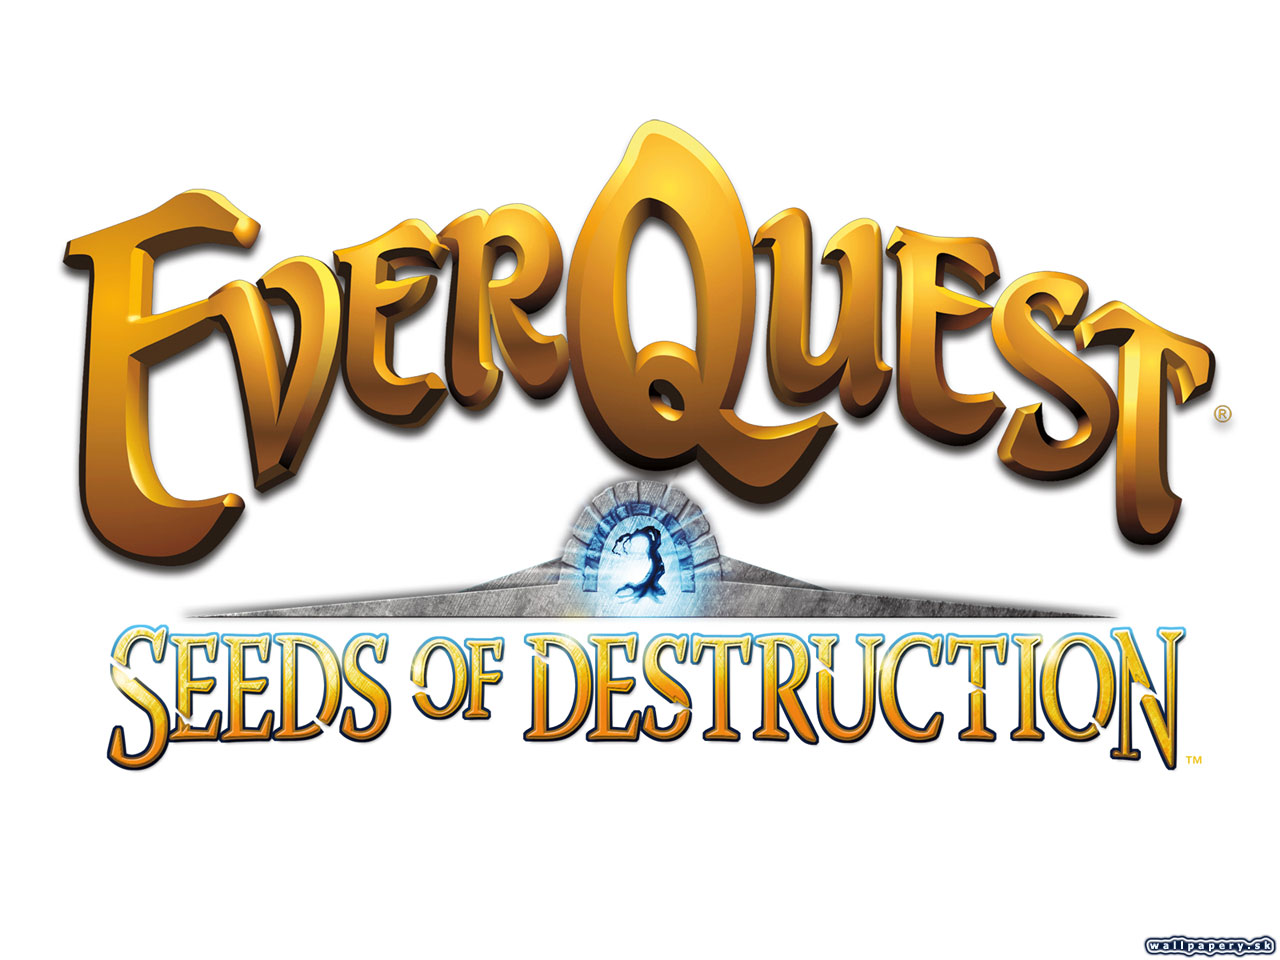 EverQuest: Seeds of Destruction - wallpaper 2